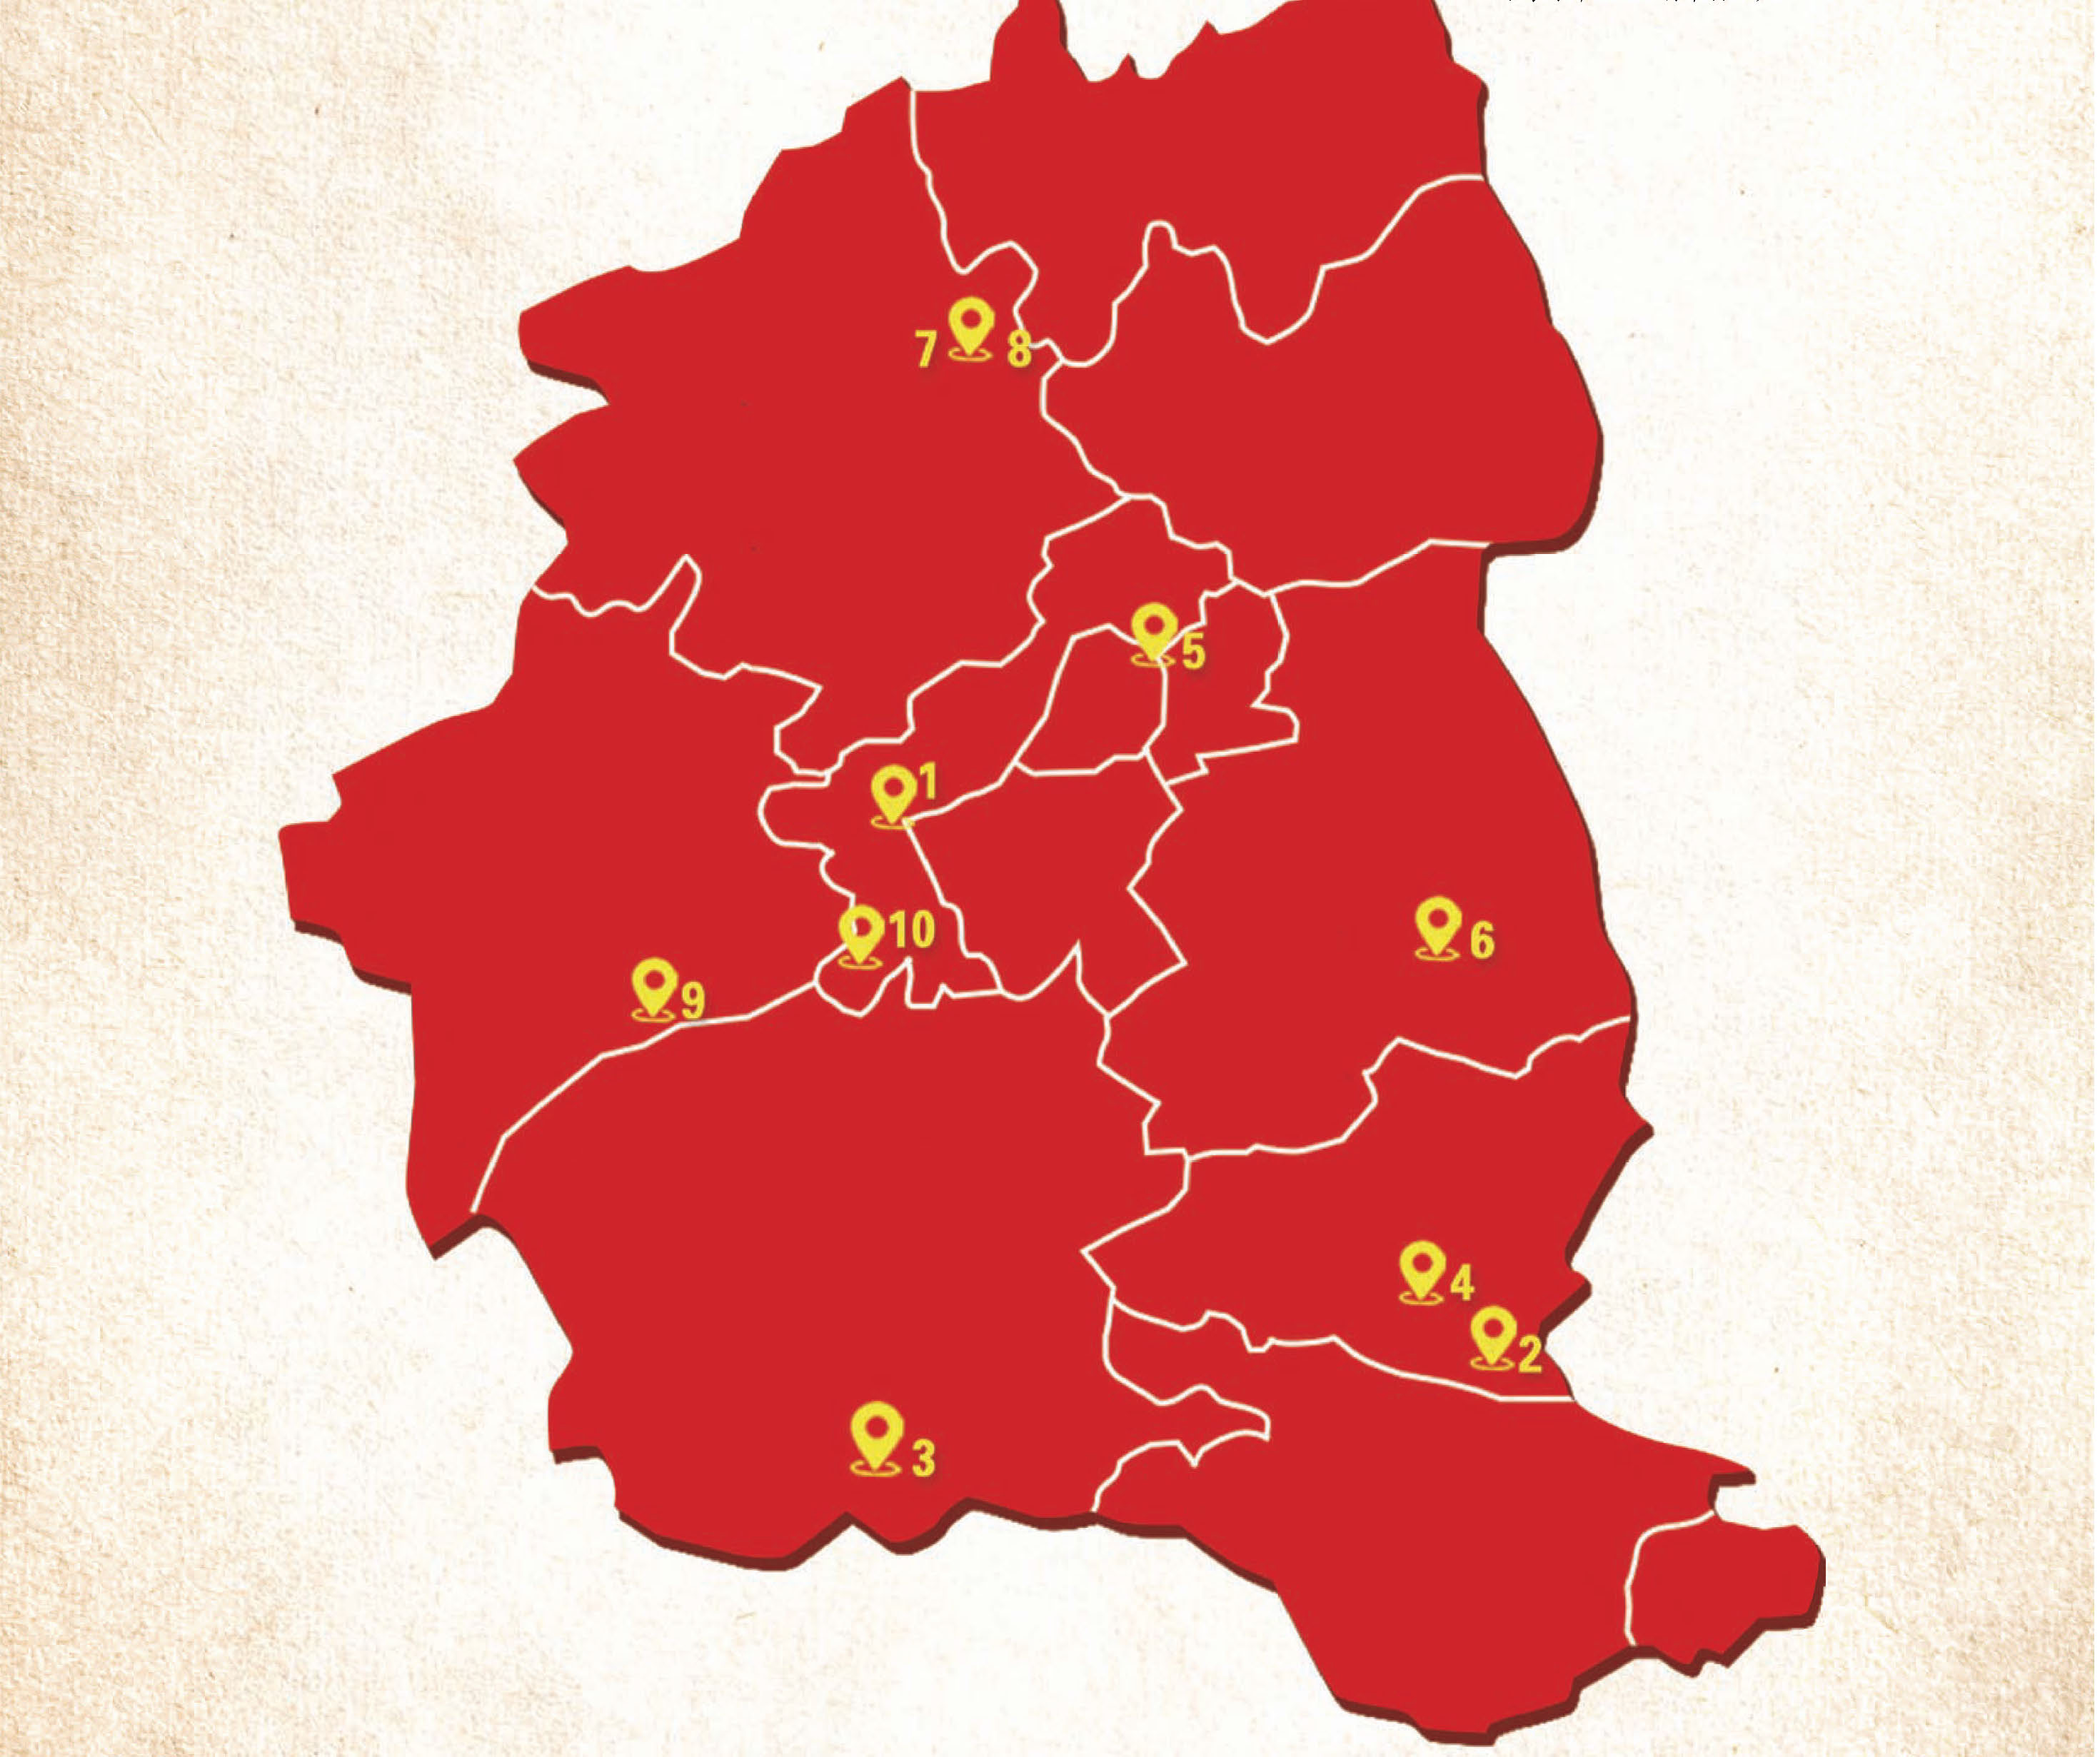 武汉红色抗日地图图片